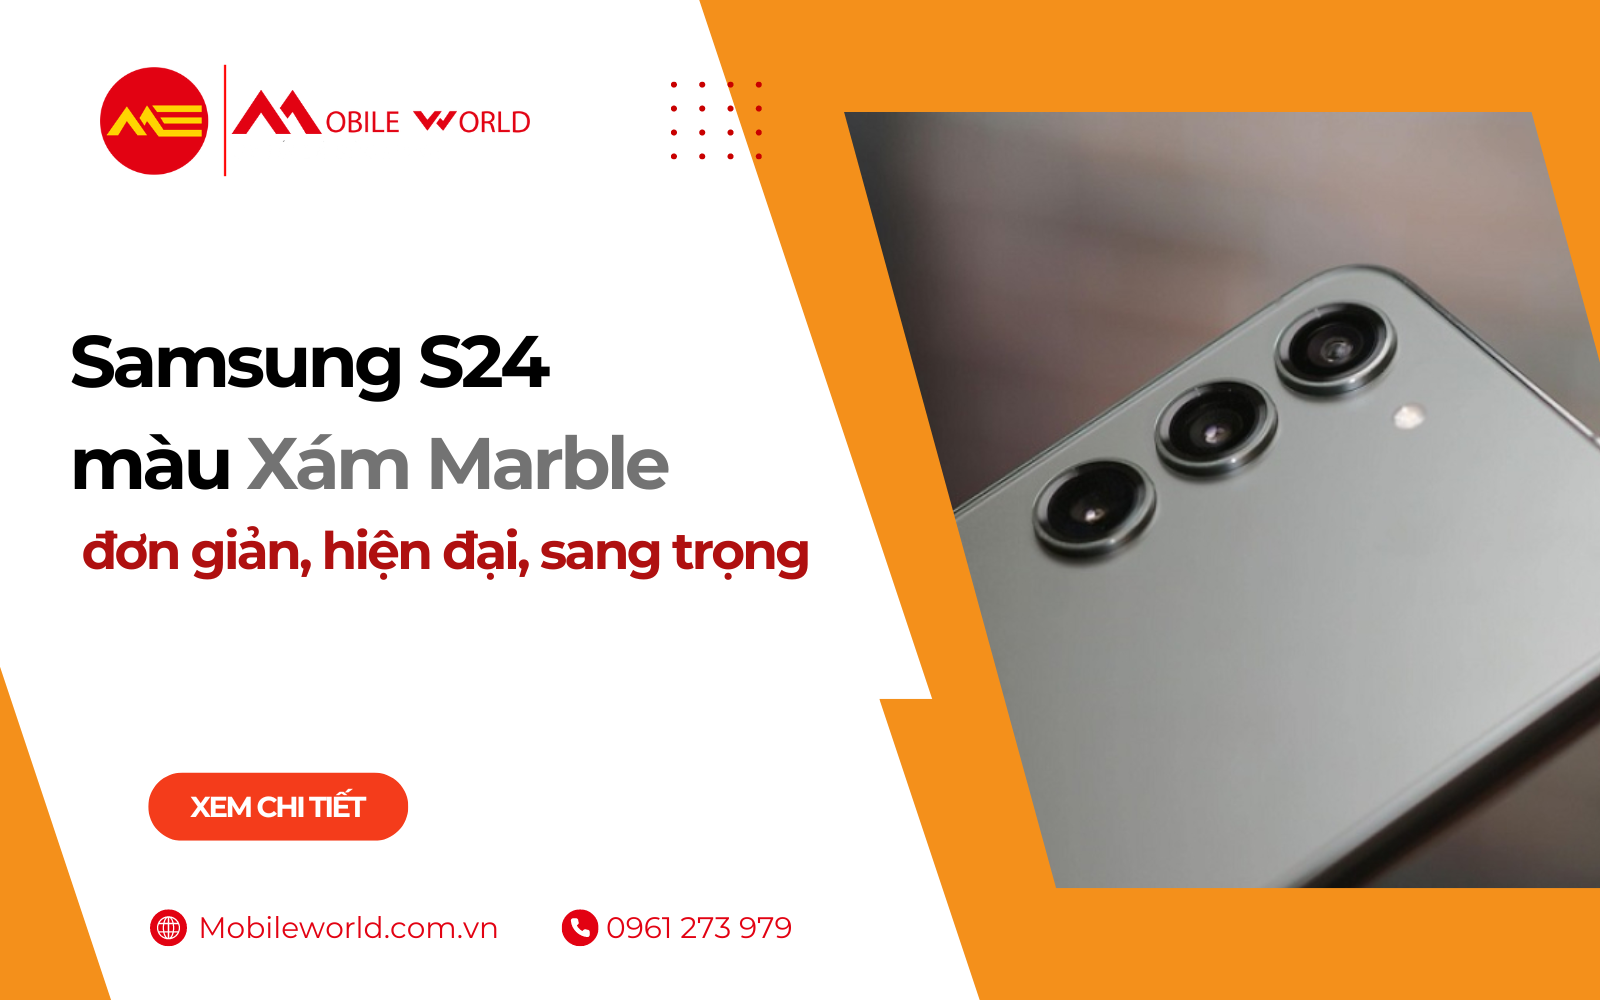 Samsung S24 màu Xám Marble: đơn giản, hiện đại, sang trọng